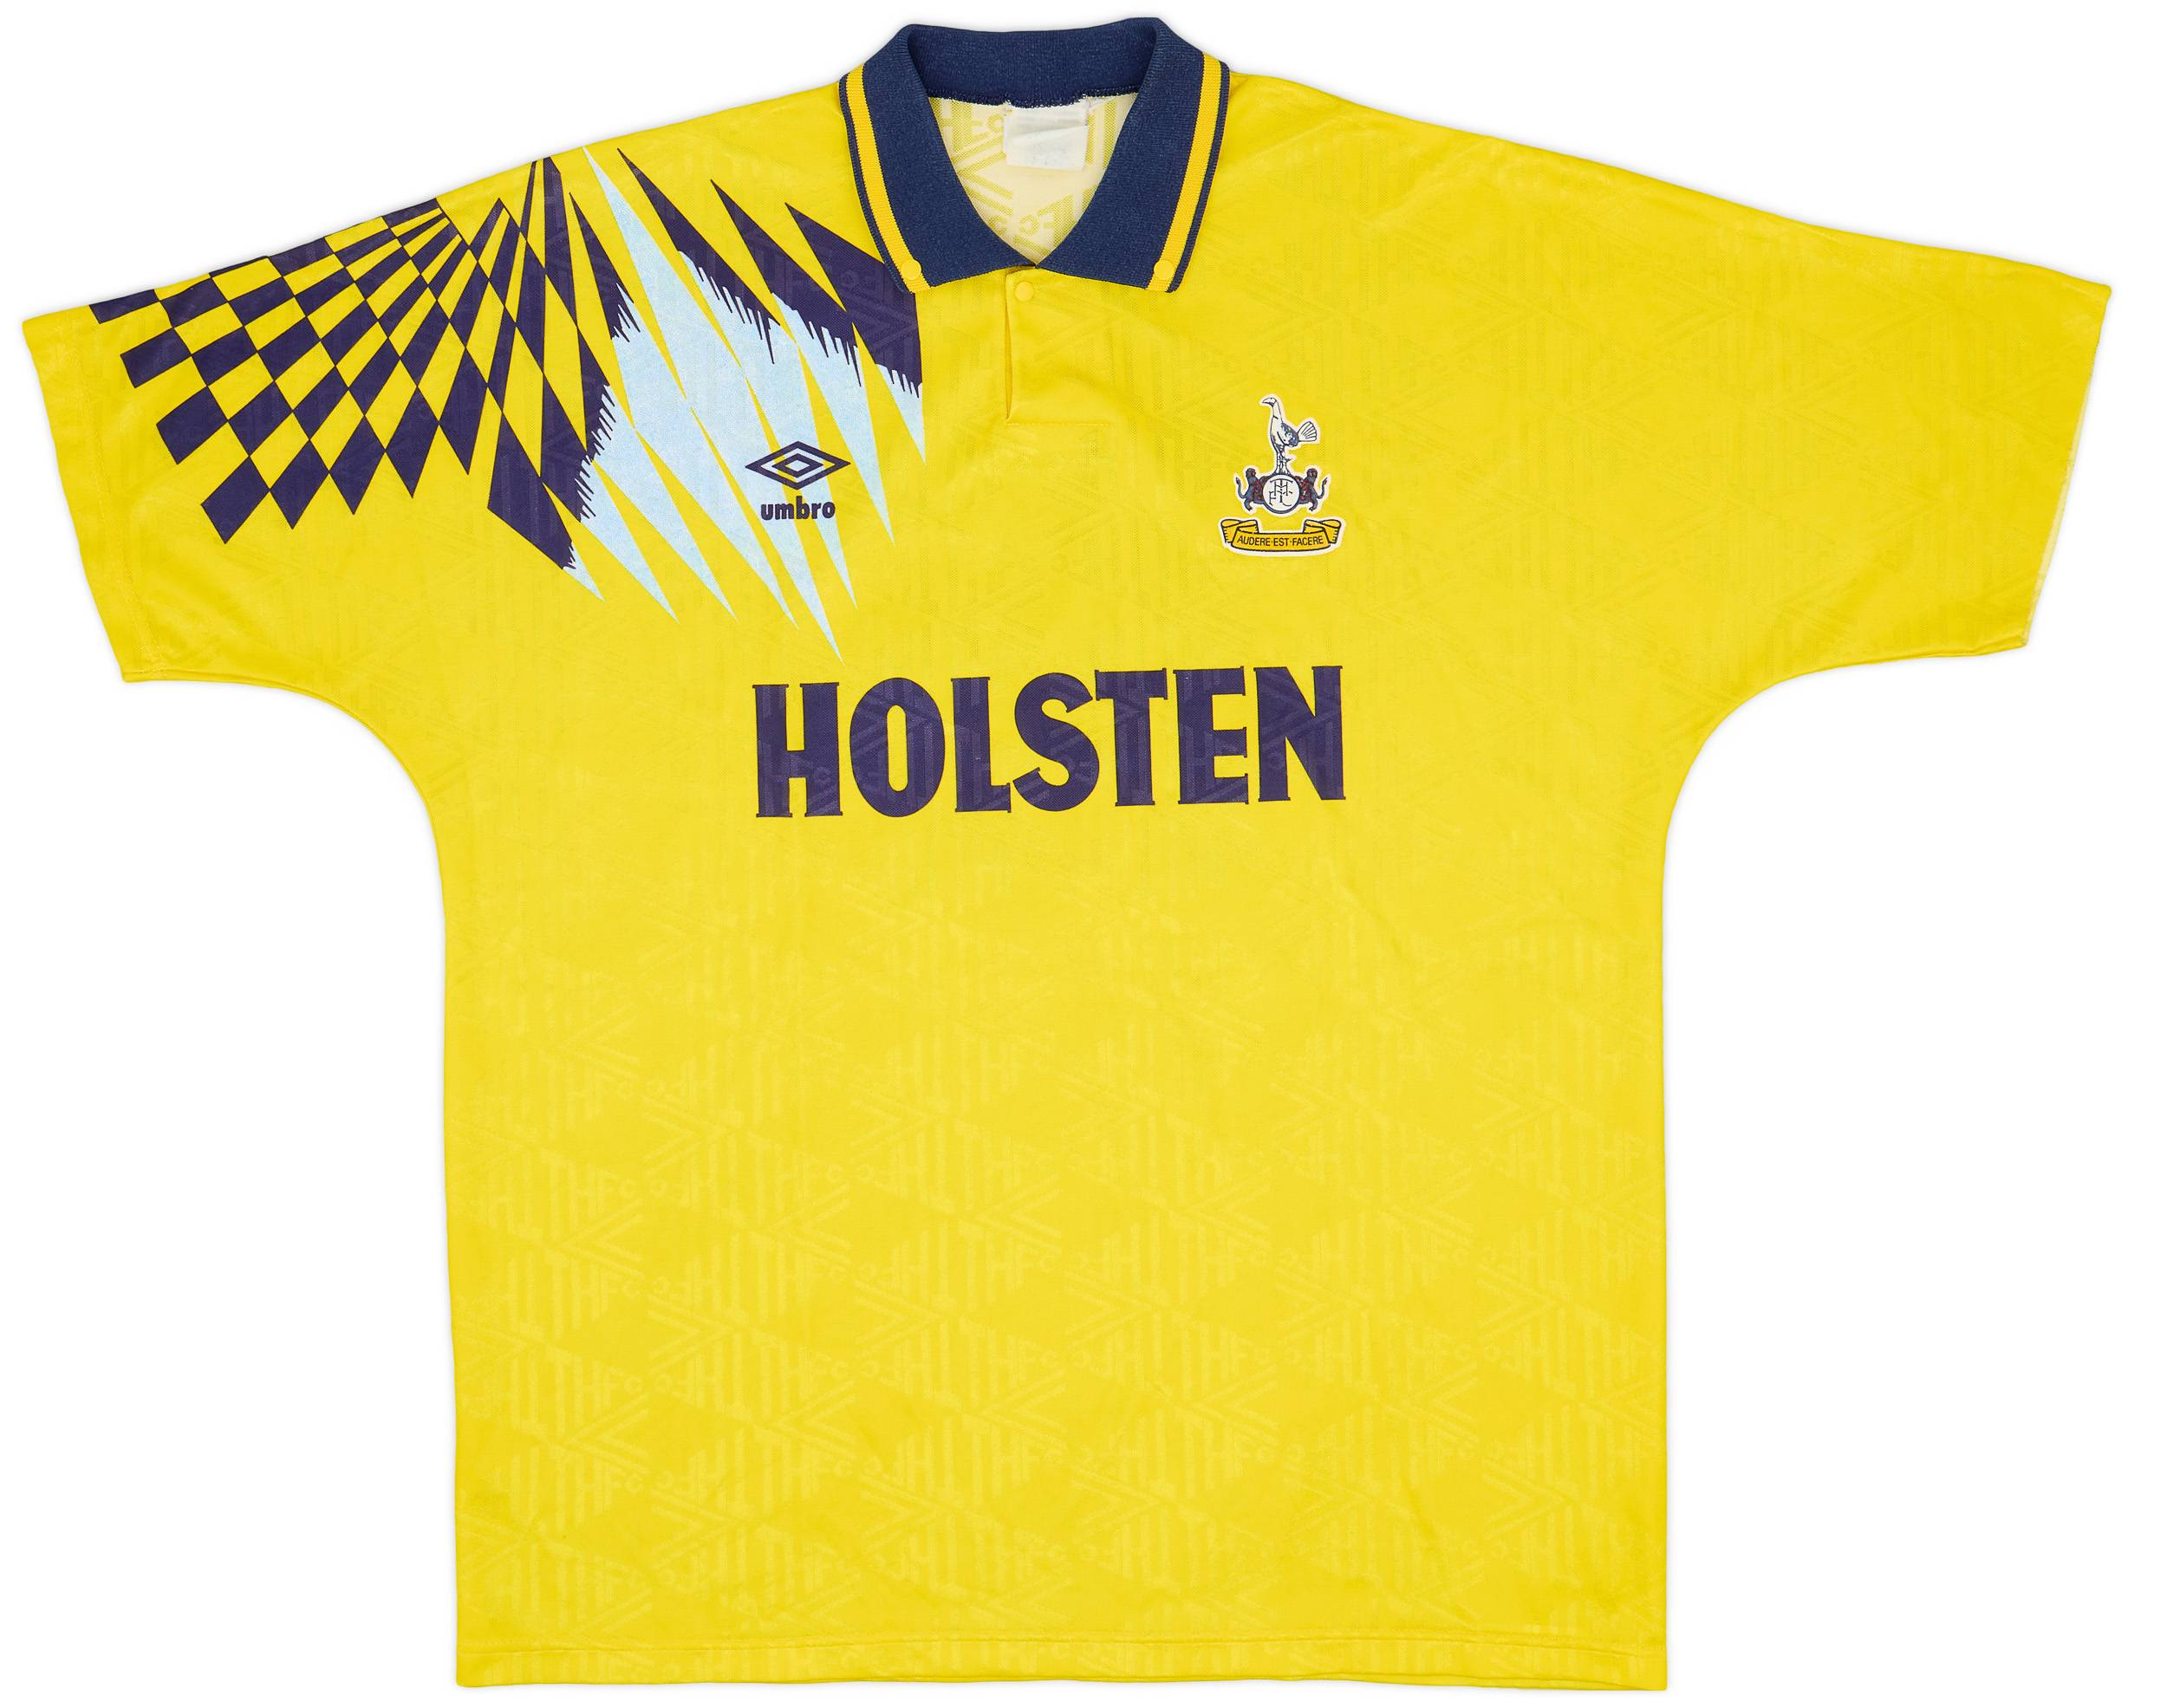 1991-95 Tottenham Away Shirt #15 - 9/10 - (XL)